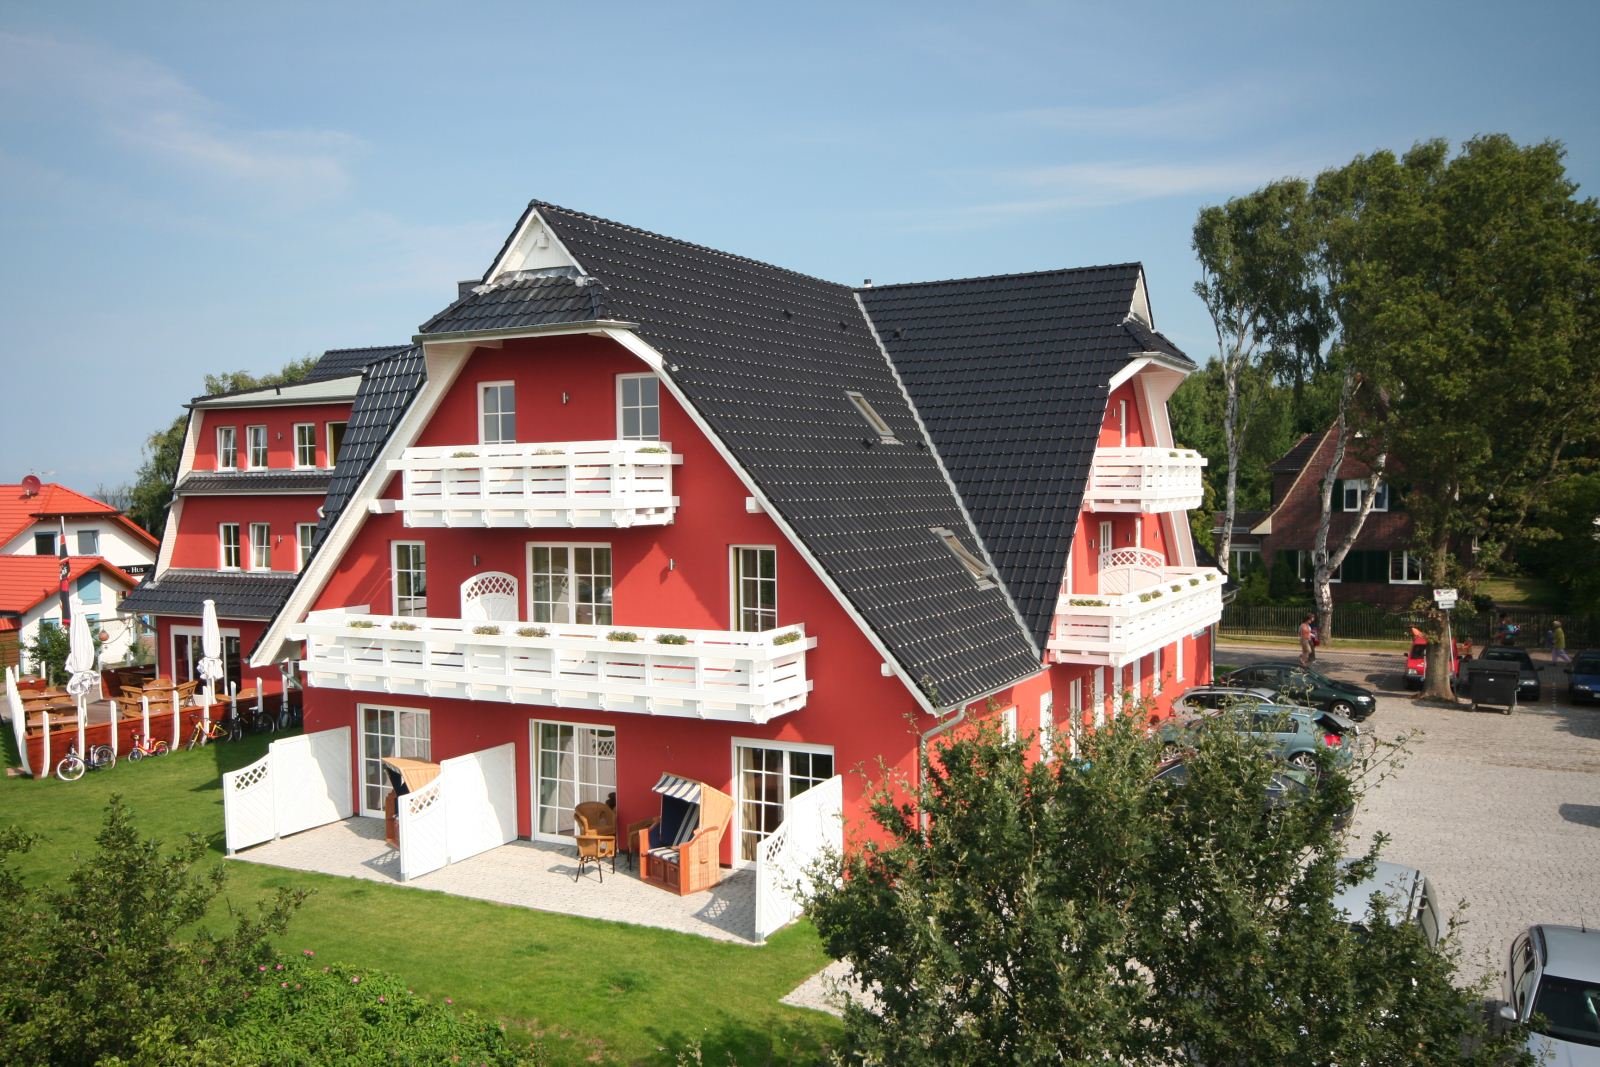 Ostsee-Romantik pur – 7 romantisch schöne Tage Strandhotel Deichgraf (4 Sterne) in Ostseeheilbad Graal Müritz, Mecklenburg-Vorpommern inkl. Halbpension